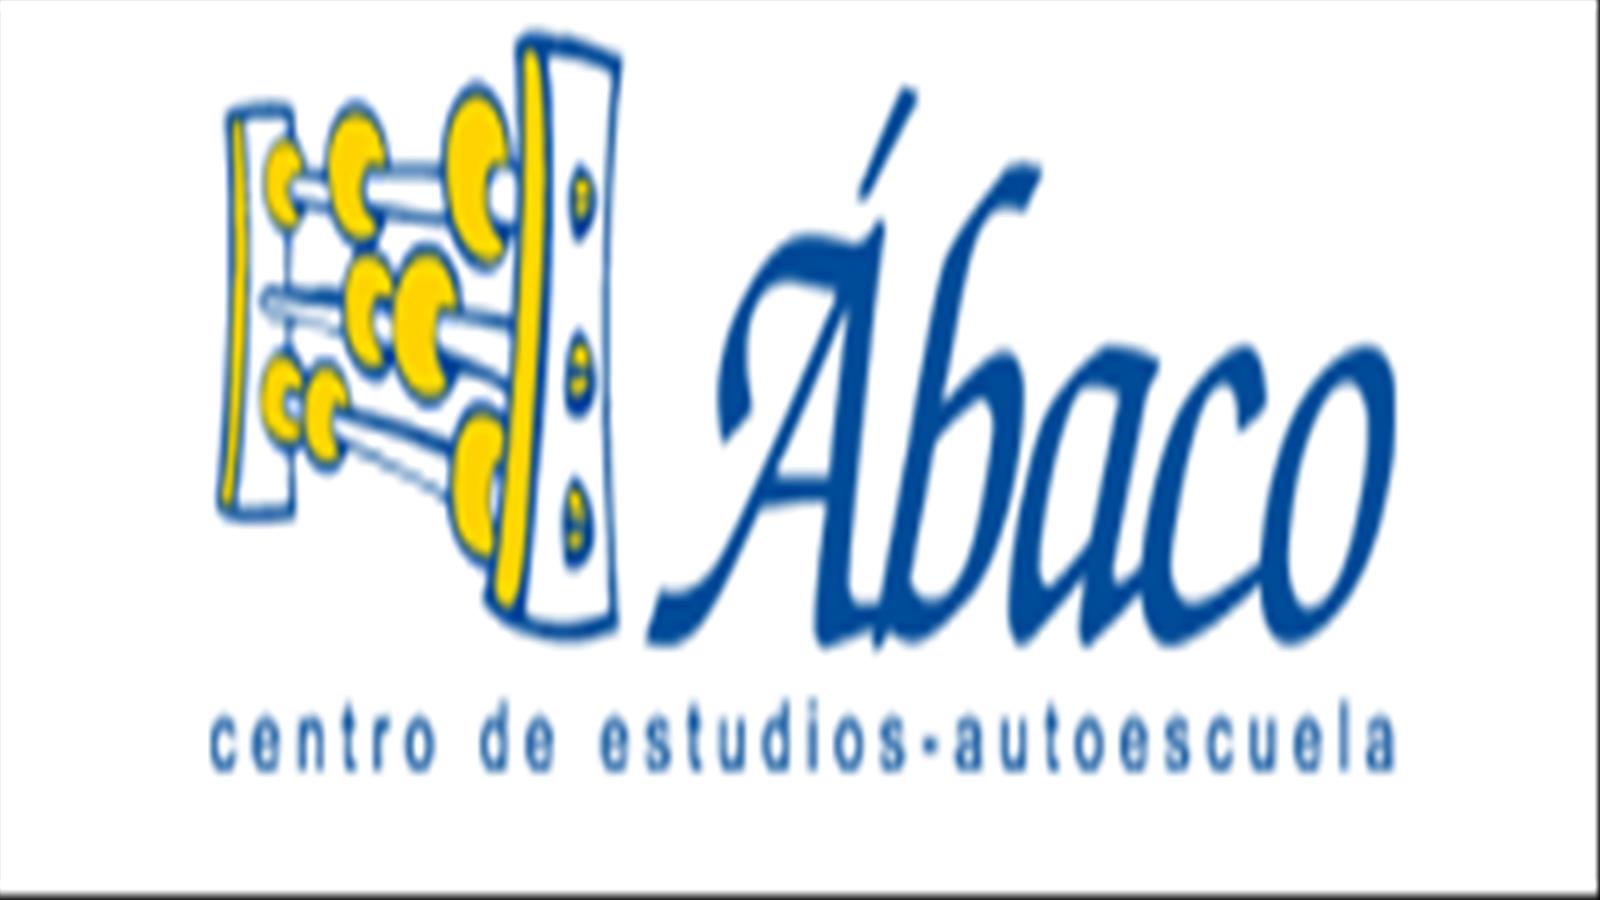 ABACO CENTRO DE ESTUDIOS AUTOESCUELA